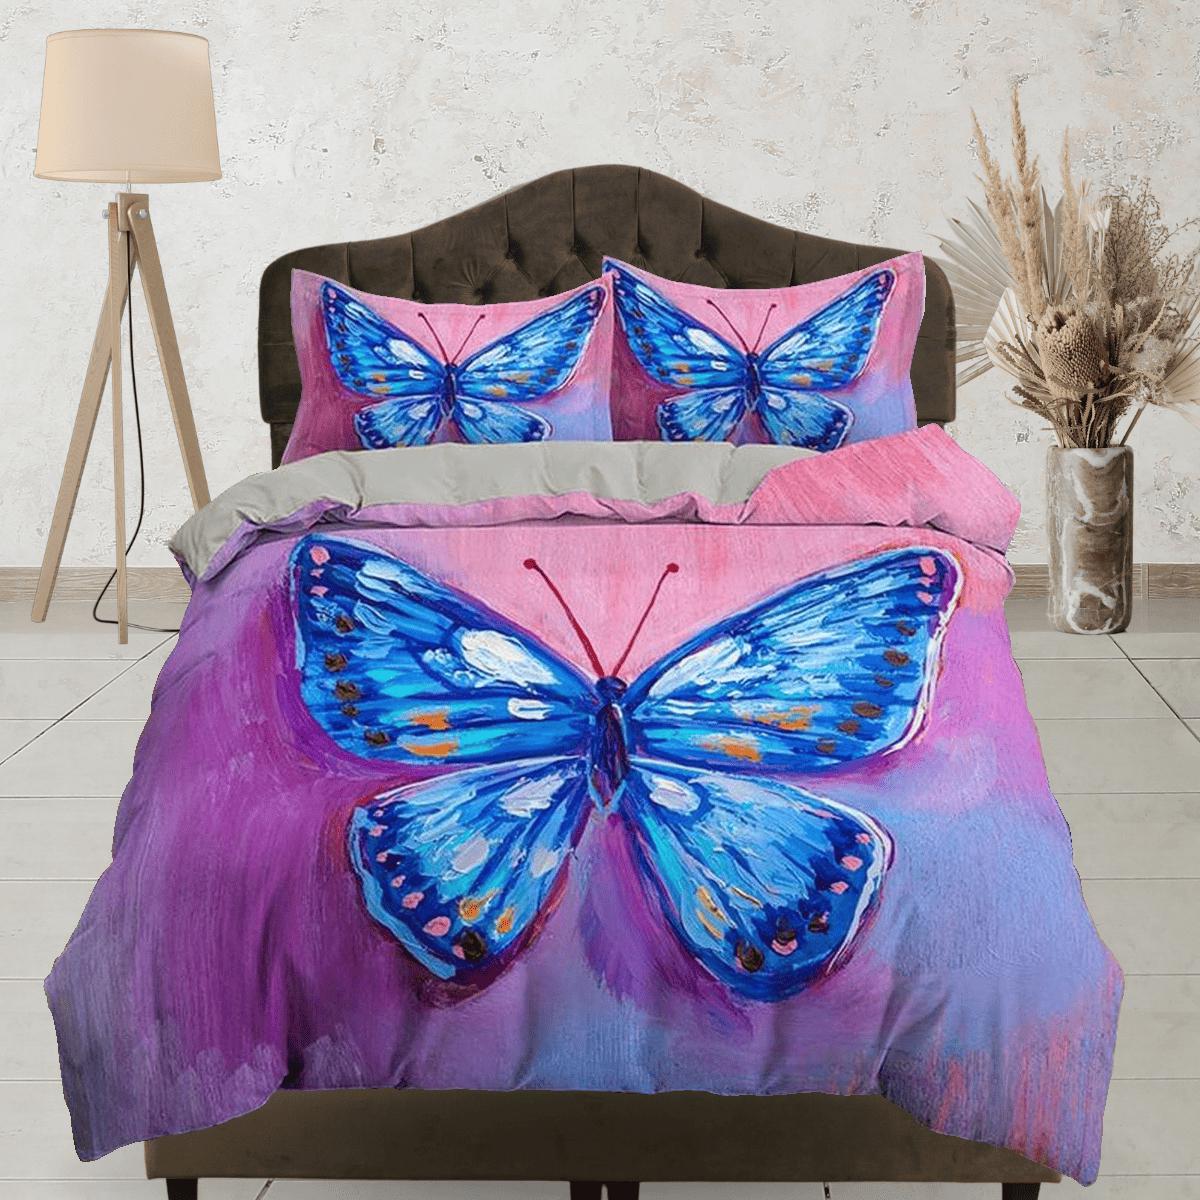 daintyduvet Artistic blue butterfly bedding boho chic aesthetic pink purple duvet cover, dorm bedding full size duvet king queen twin, nursery toddler